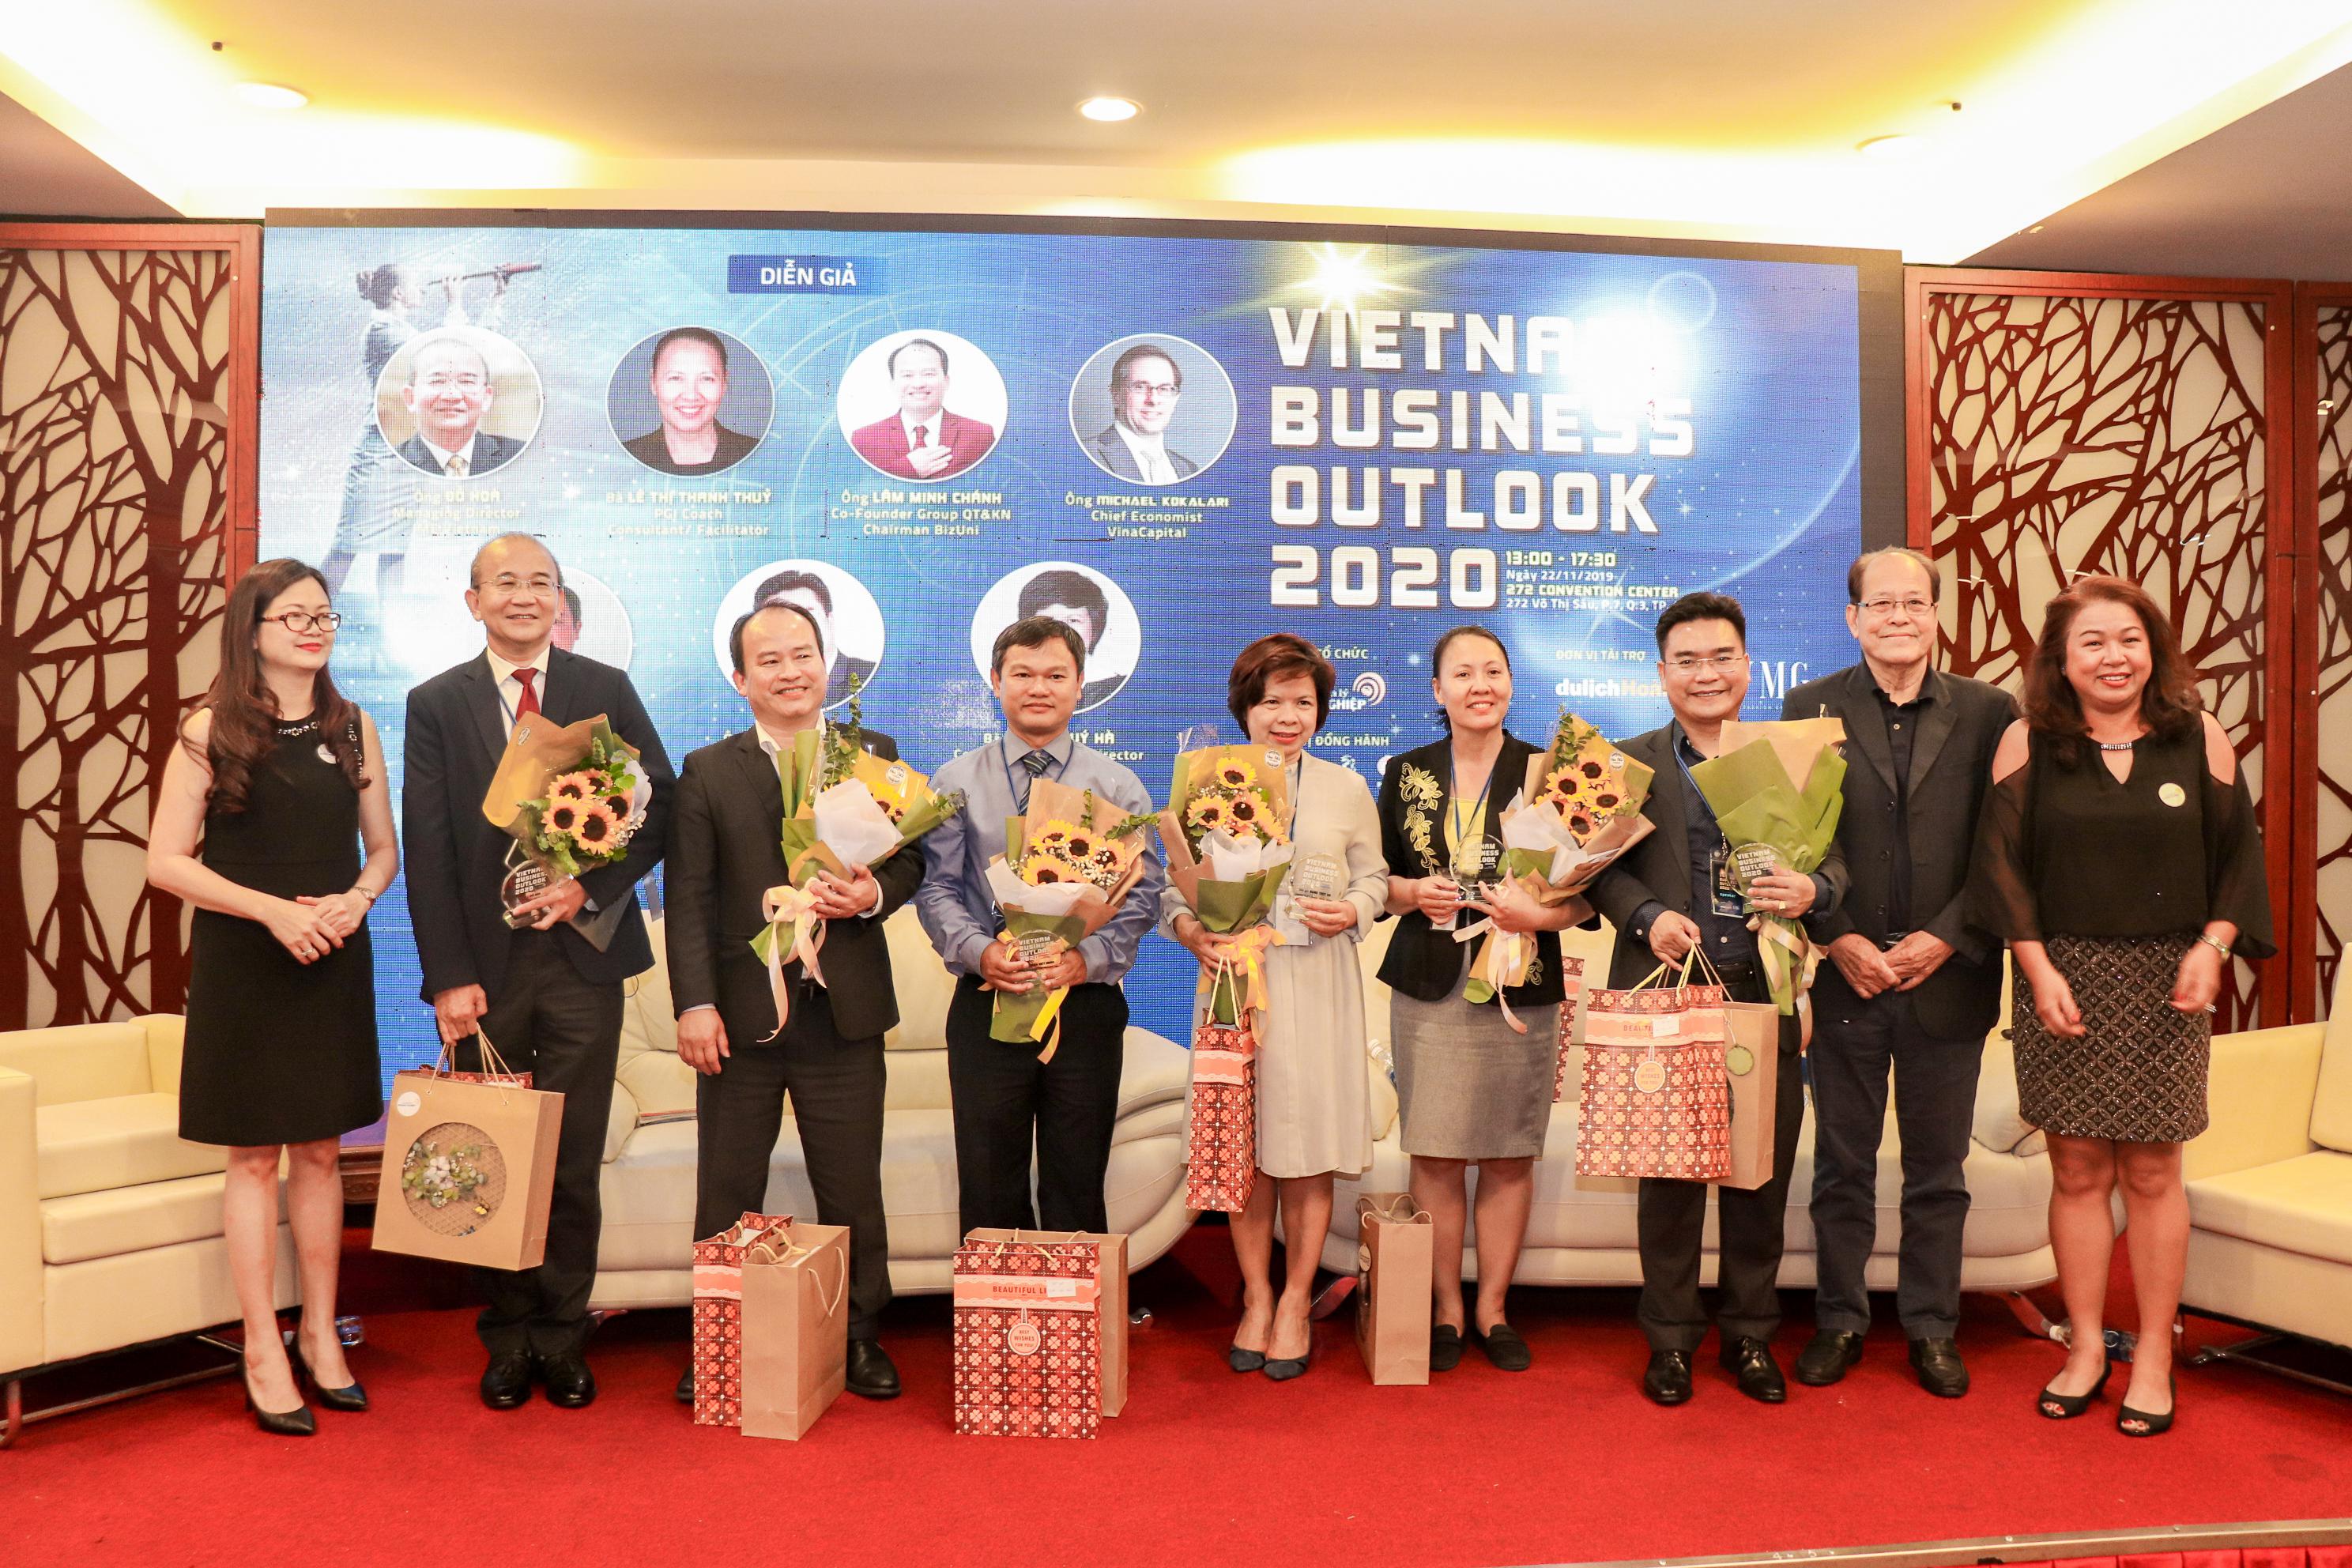 VIETNAM BUSINESS OUTLOOK 2020